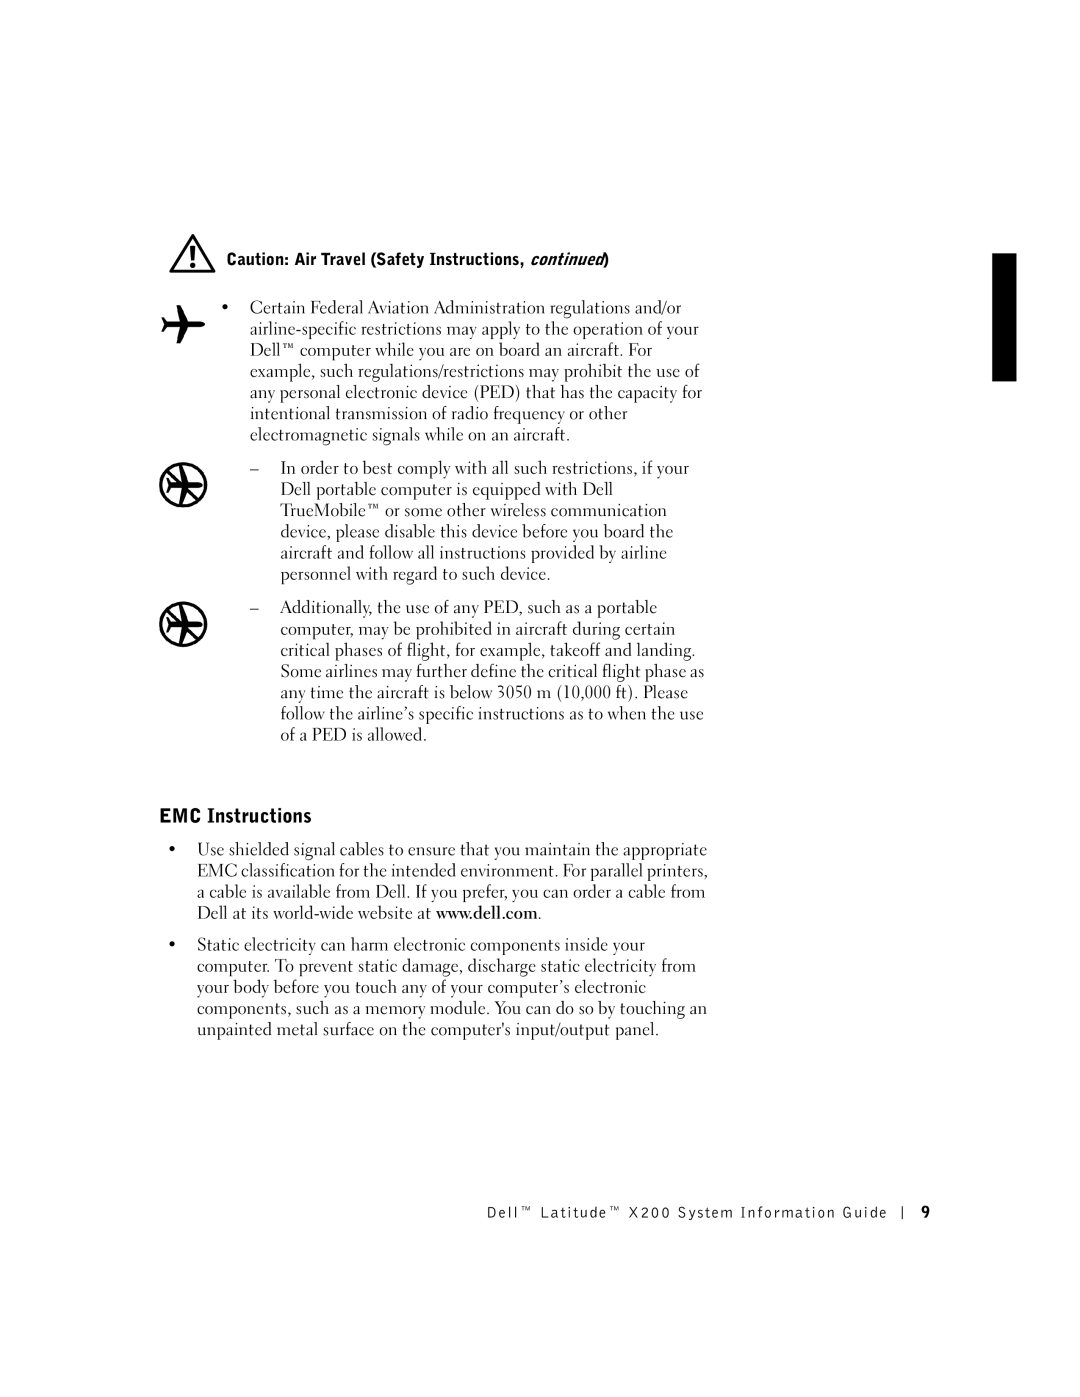 LeapFrog PP03S manual EMC Instructions 